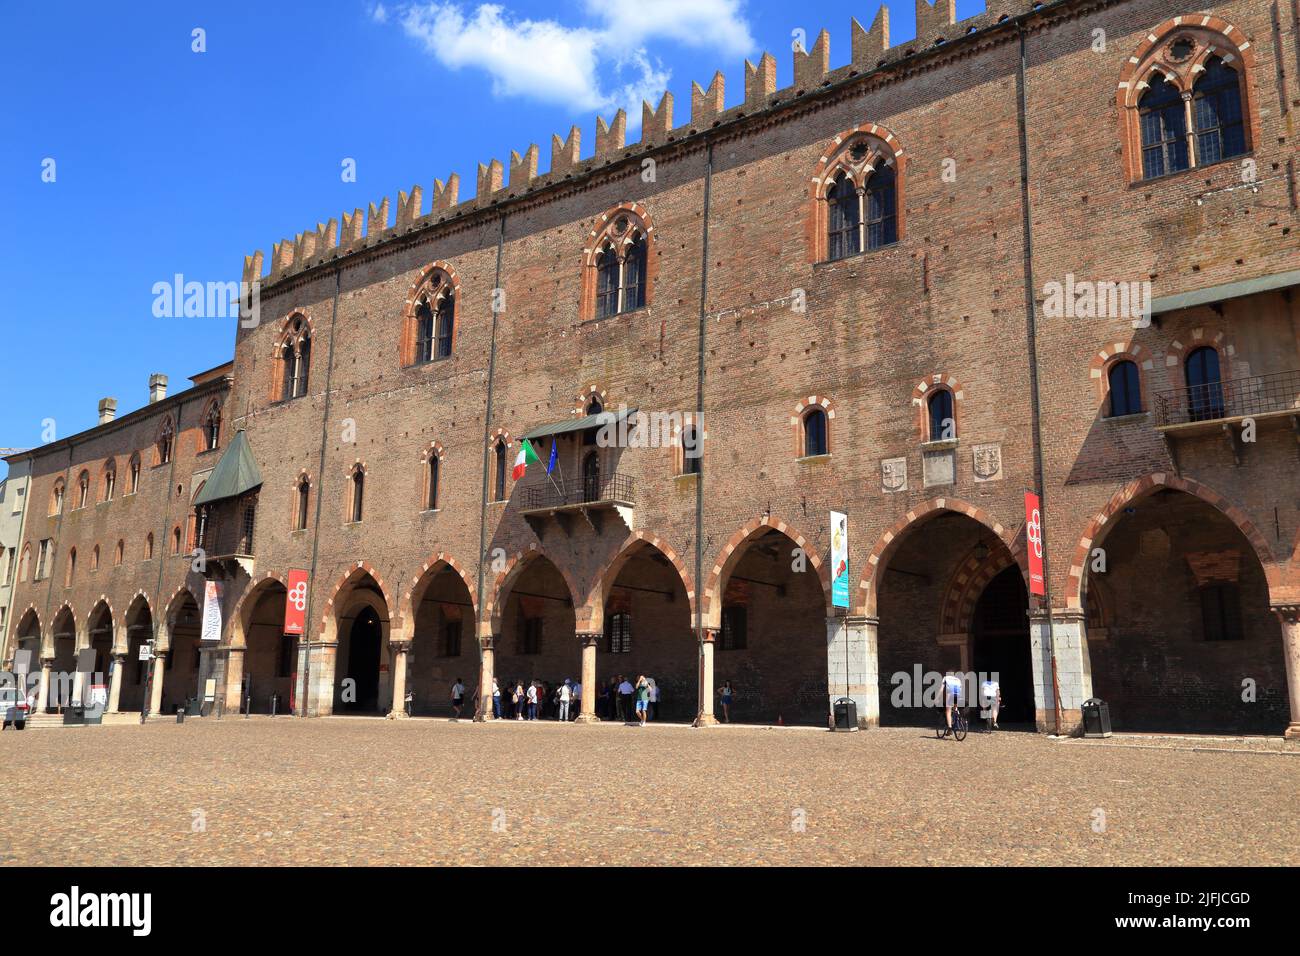 Palazzo Ducale di Mantova, Mantua Italy Stock Photo